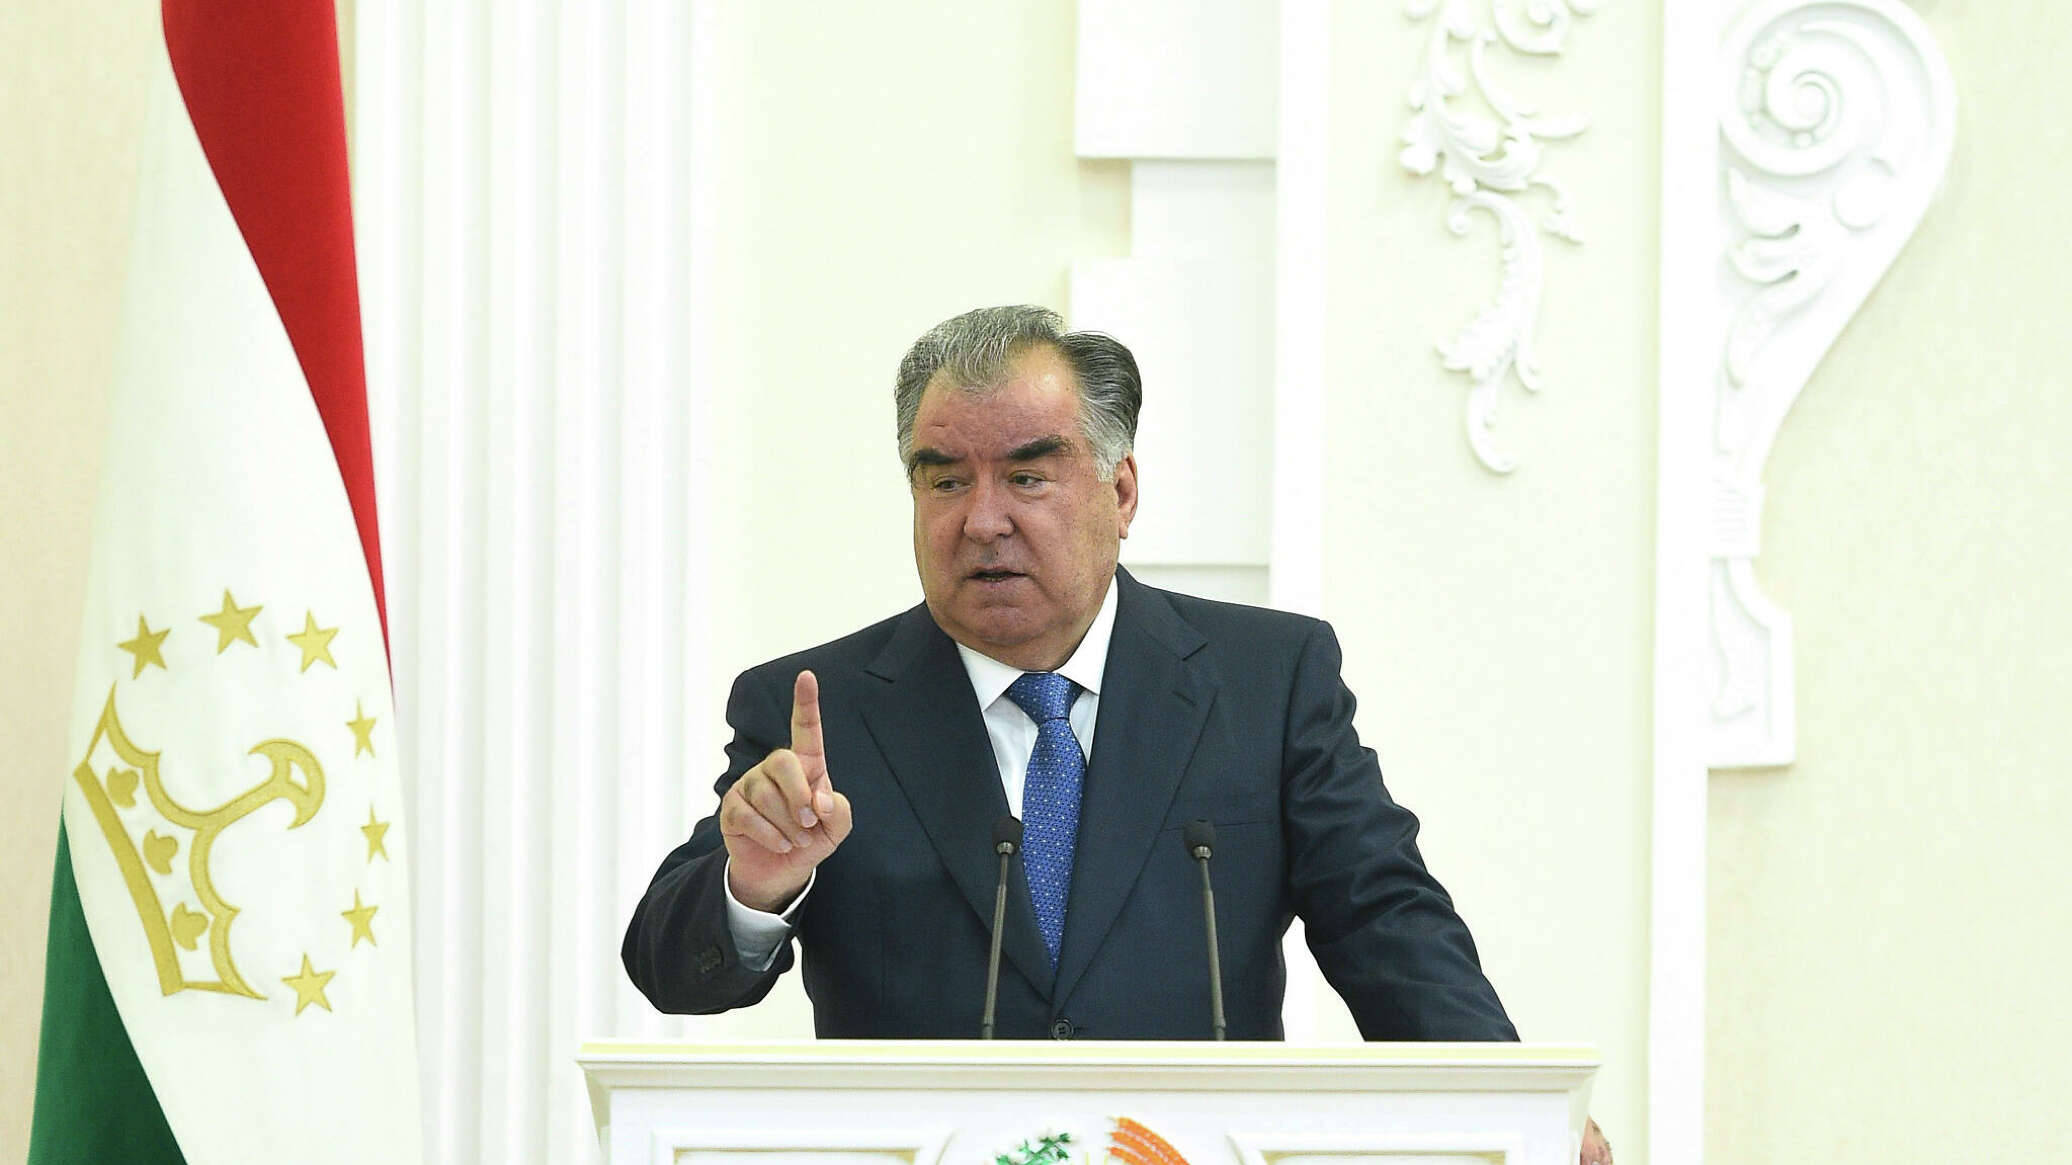 Заявление президента таджикистана. Эмомали Рахмон 2022.